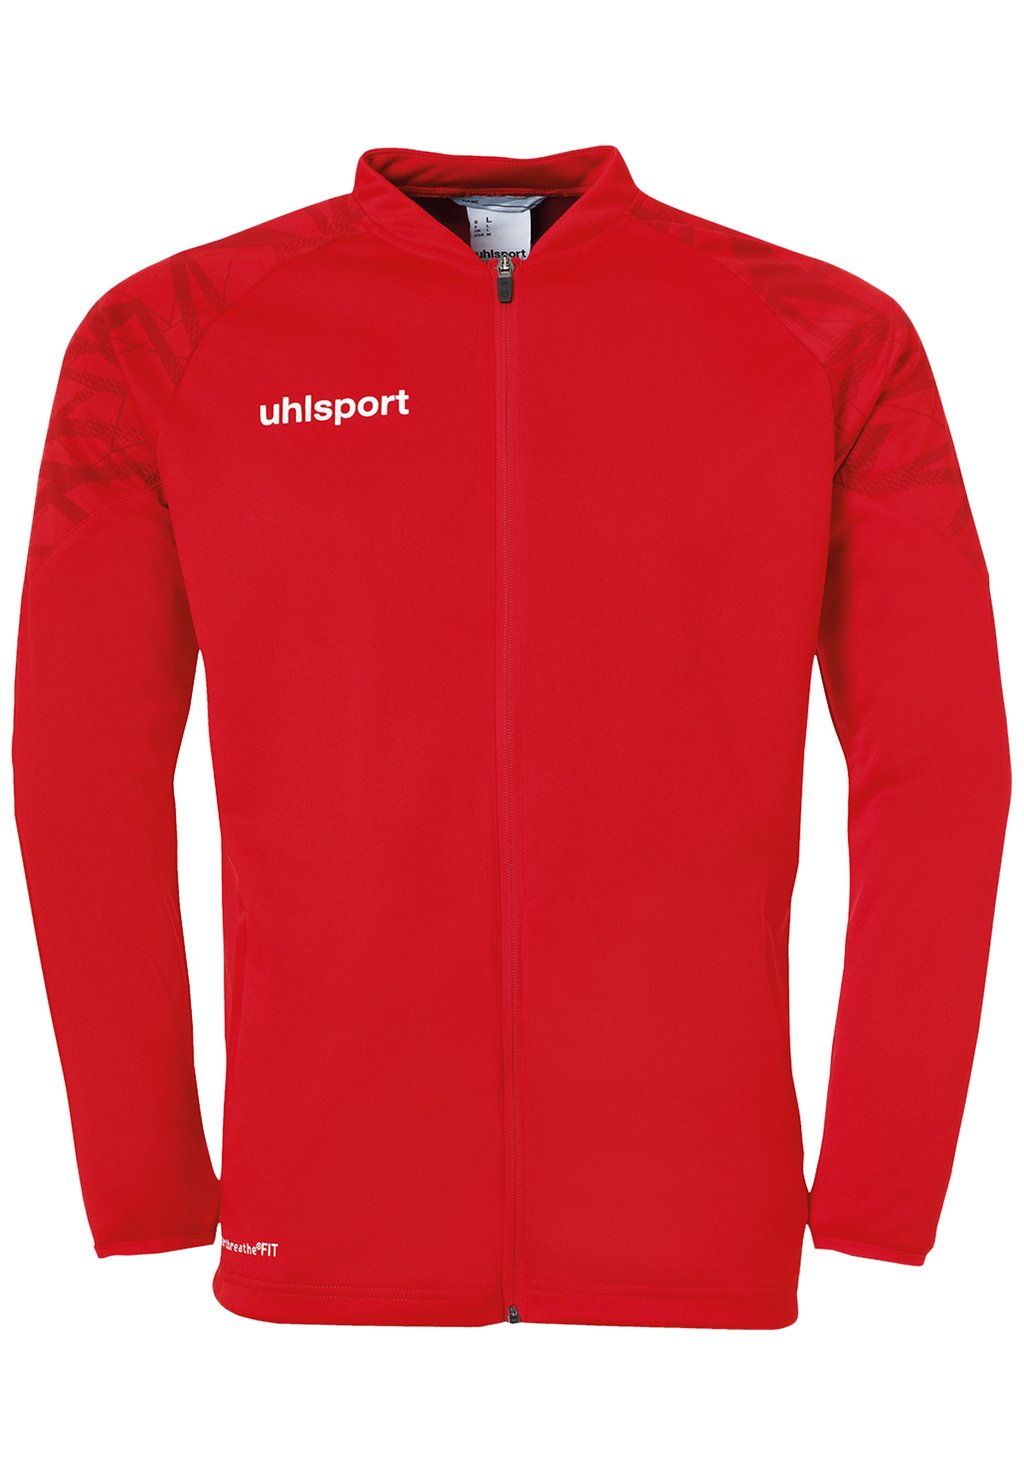 Тренировочная куртка GOAL uhlsport, цвет rot weiß